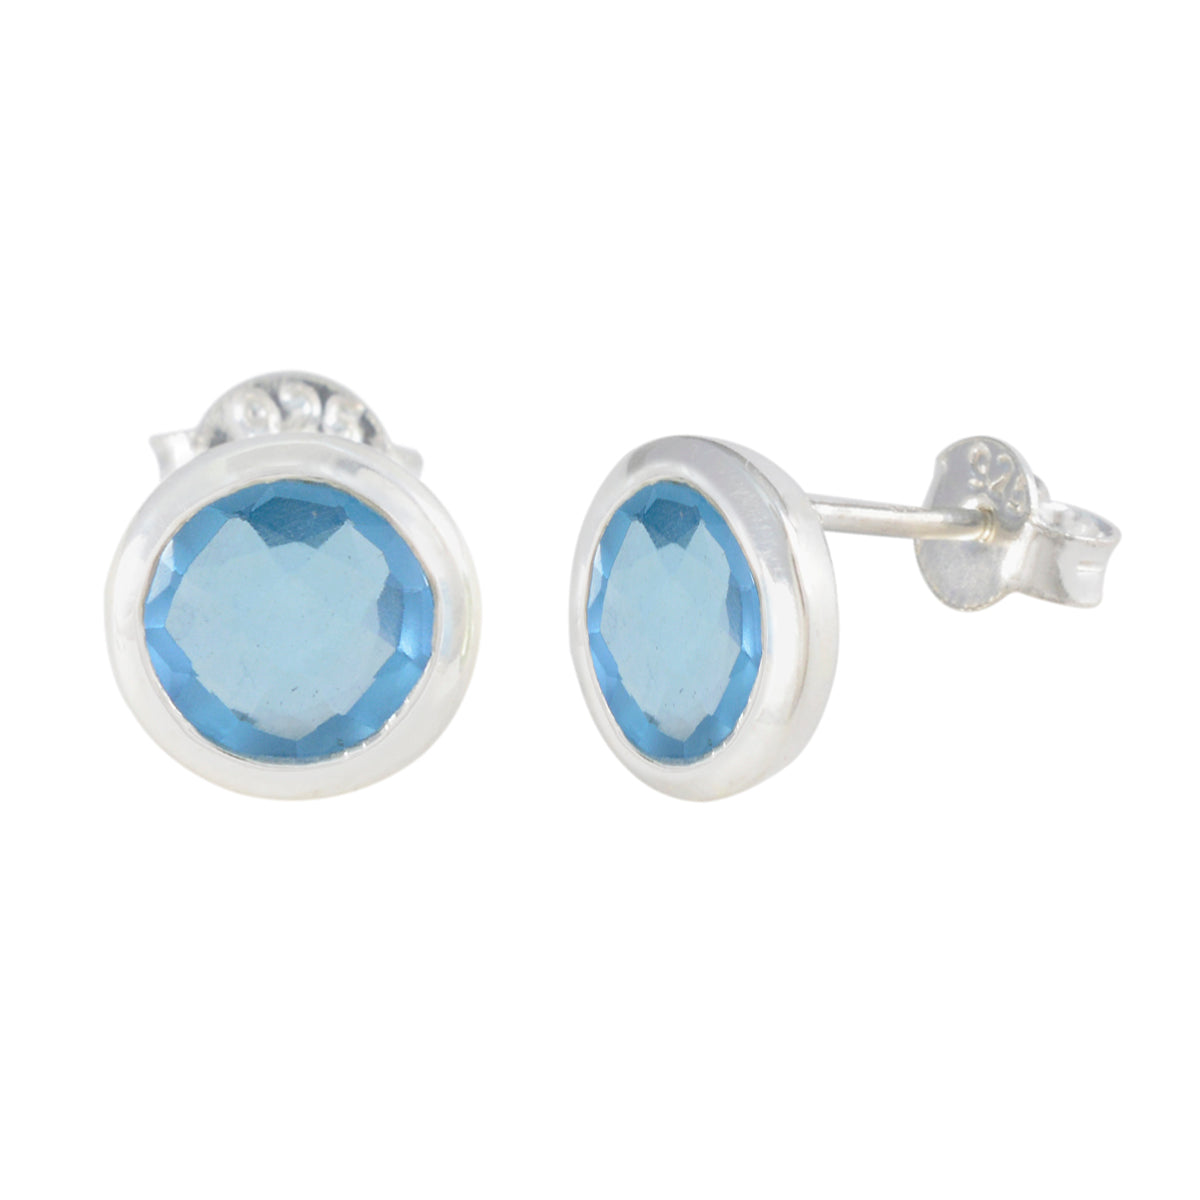 Riyo Easy On The Eye 925 Sterling Silver Earring For Wife Blue Topaz Earring Bezel Setting Blue Earring Stud Earring